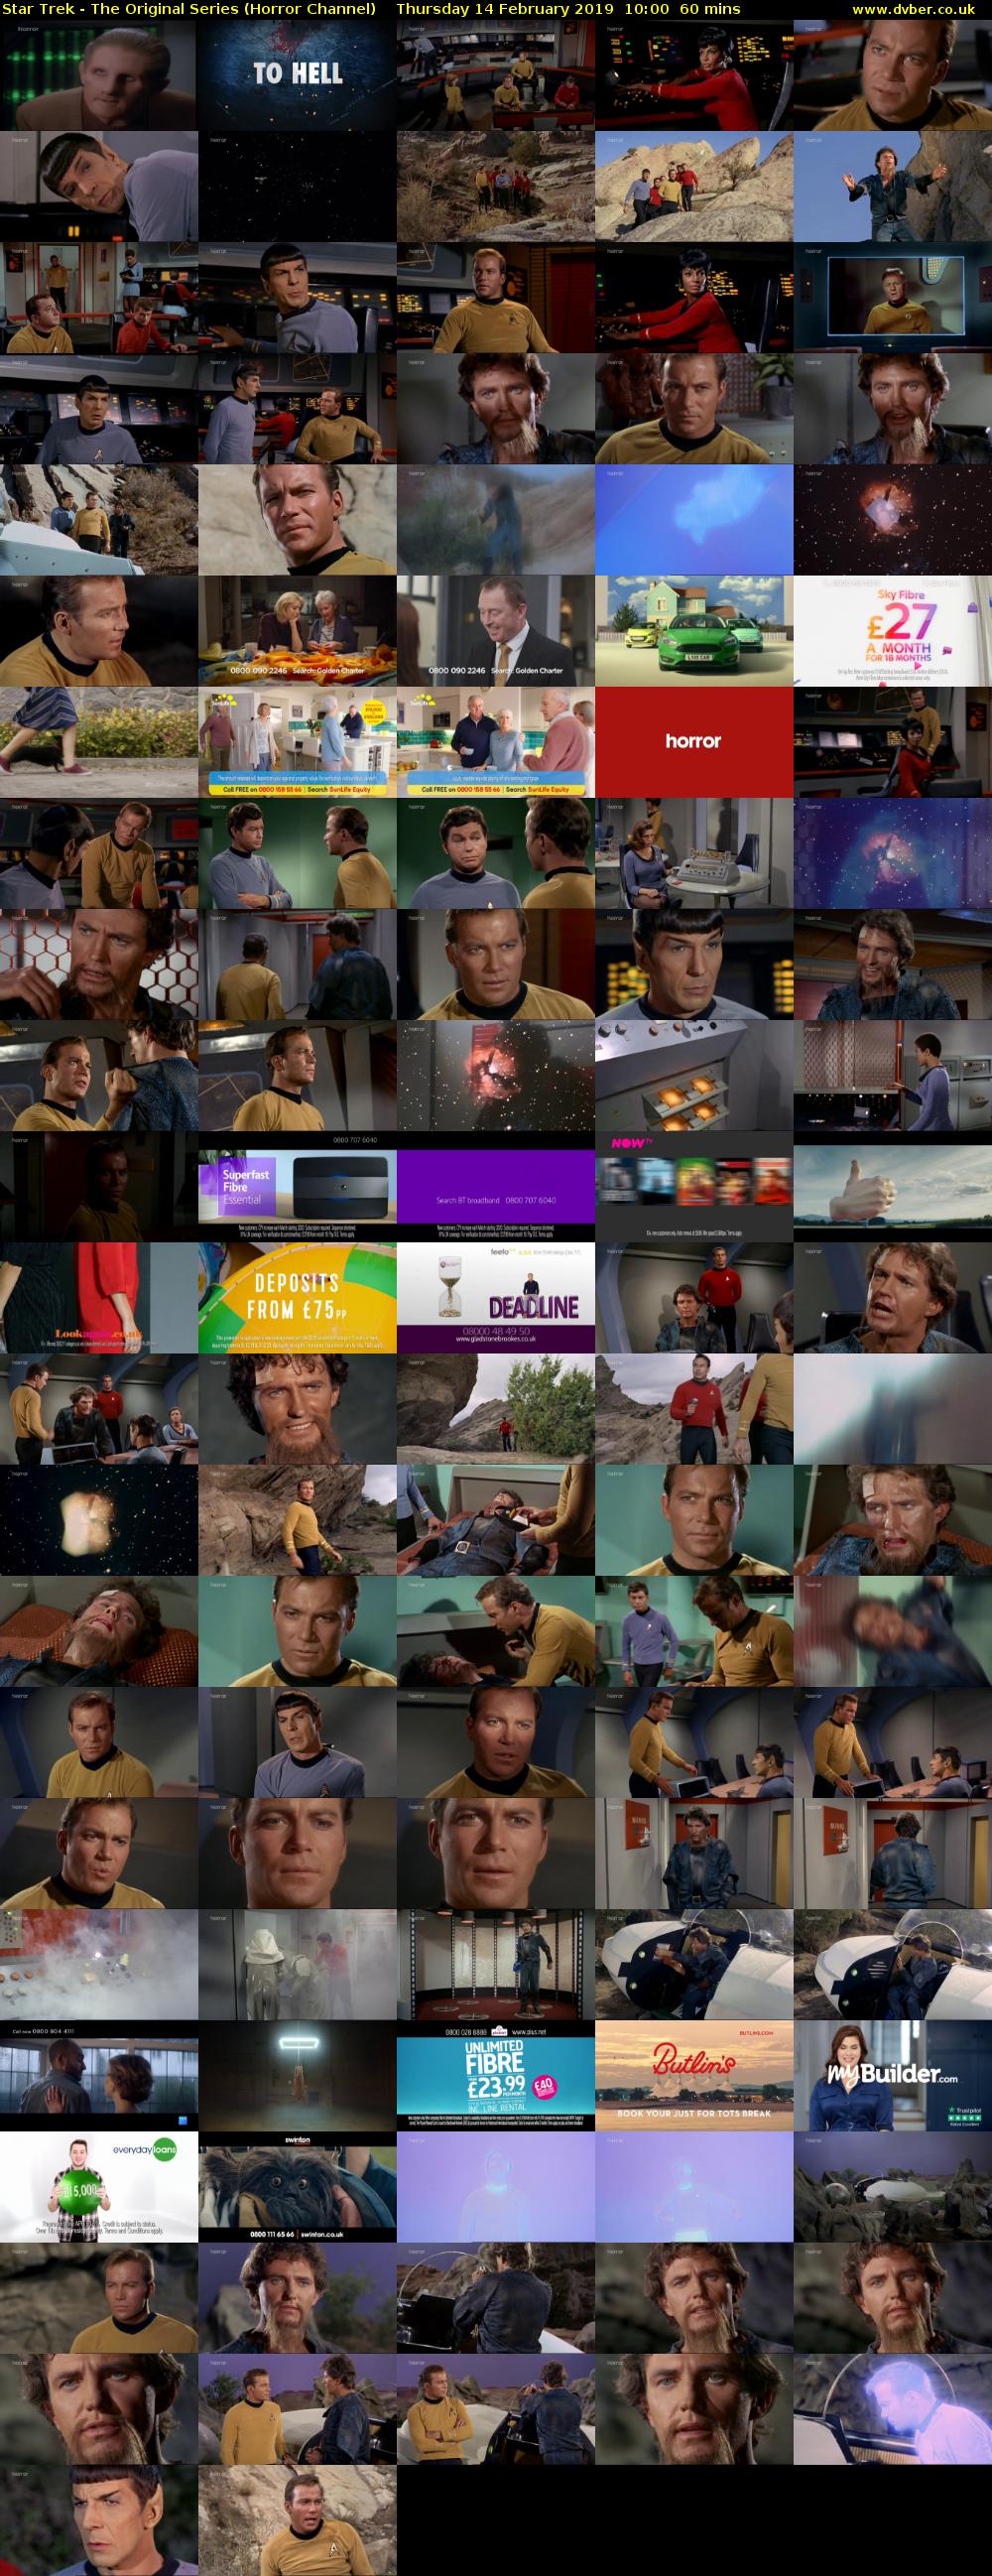 Star Trek - The Original Series (Horror Channel) Thursday 14 February 2019 10:00 - 11:00